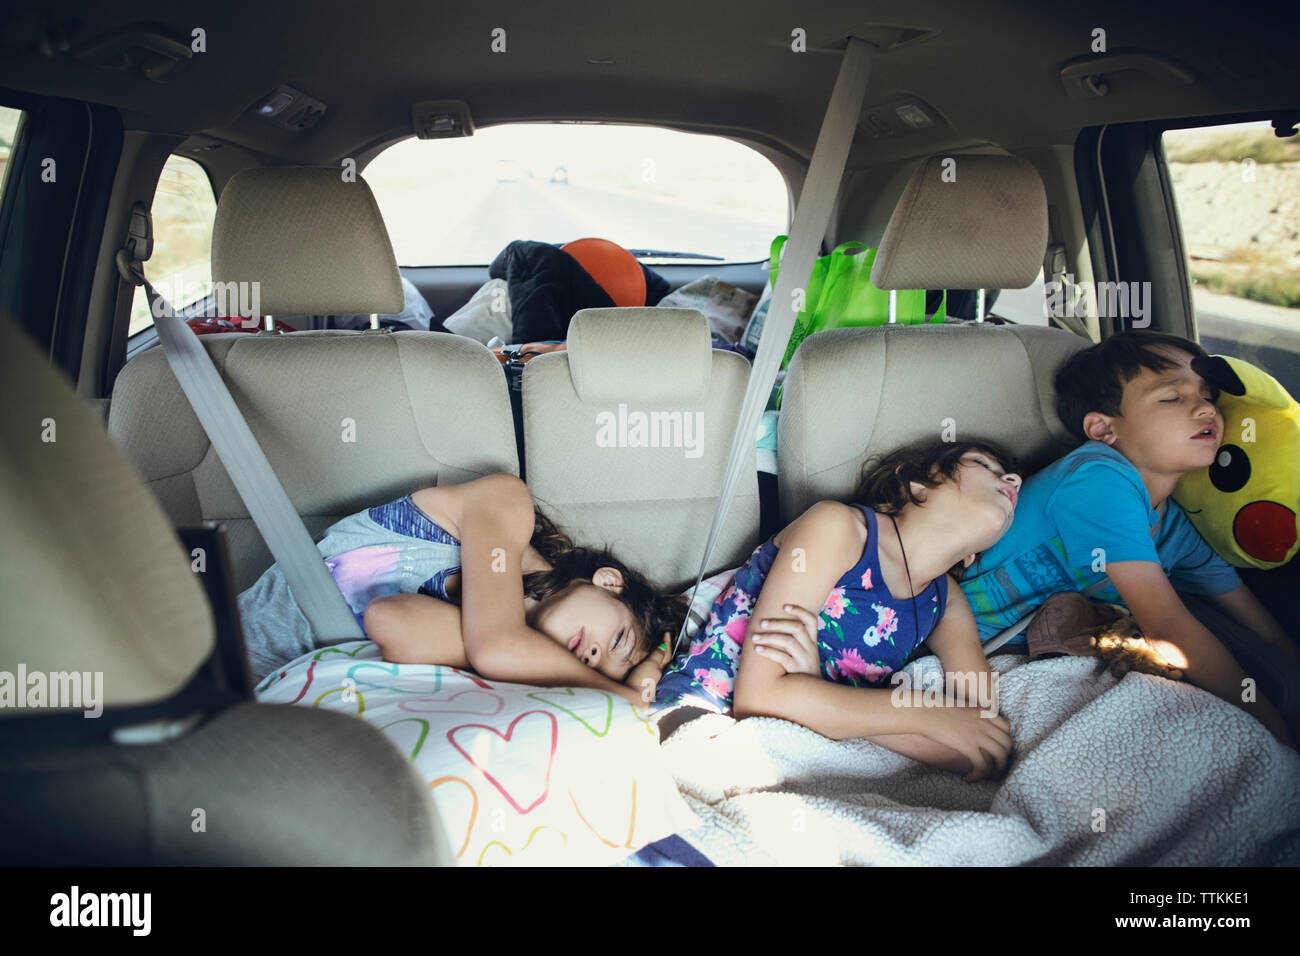 Müde Geschwister im Auto schlafen Stockfotografie - Alamy